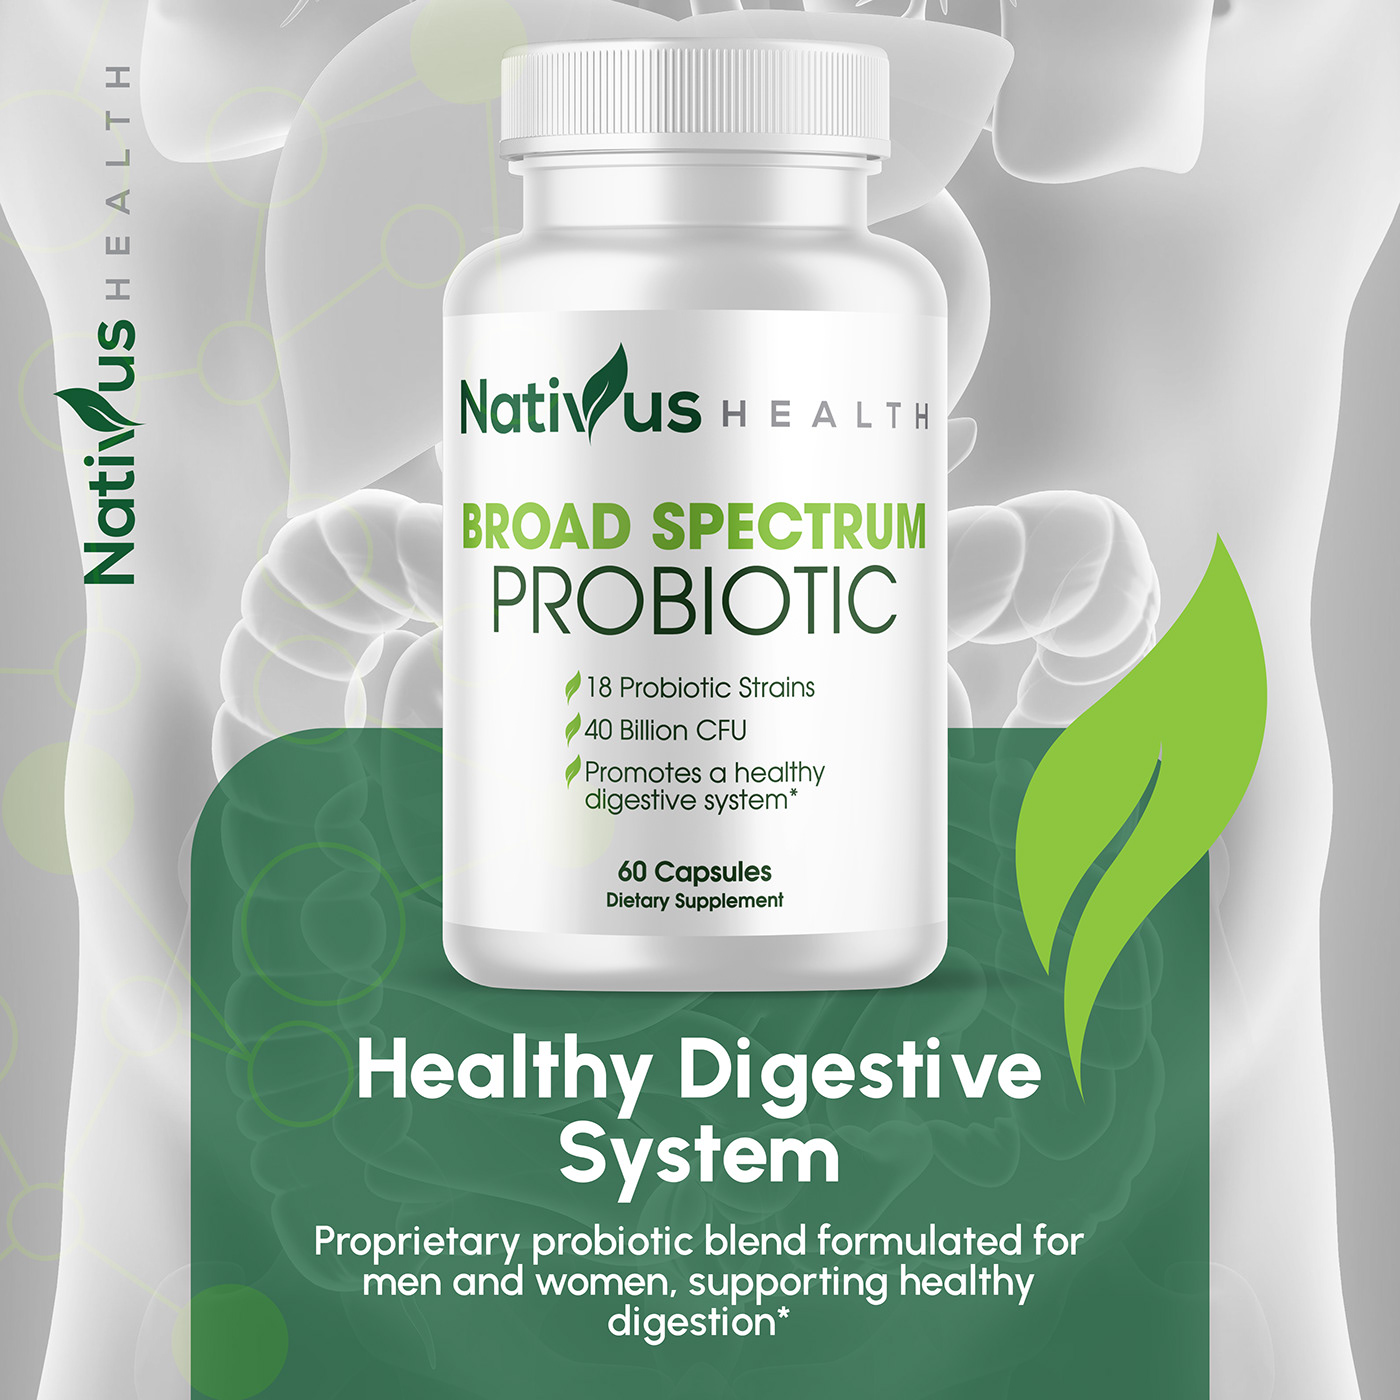 probiotics Probiotic Supplement capsule supplement Supplement label design probiotic capsules probiotics supplement weight loss capsules